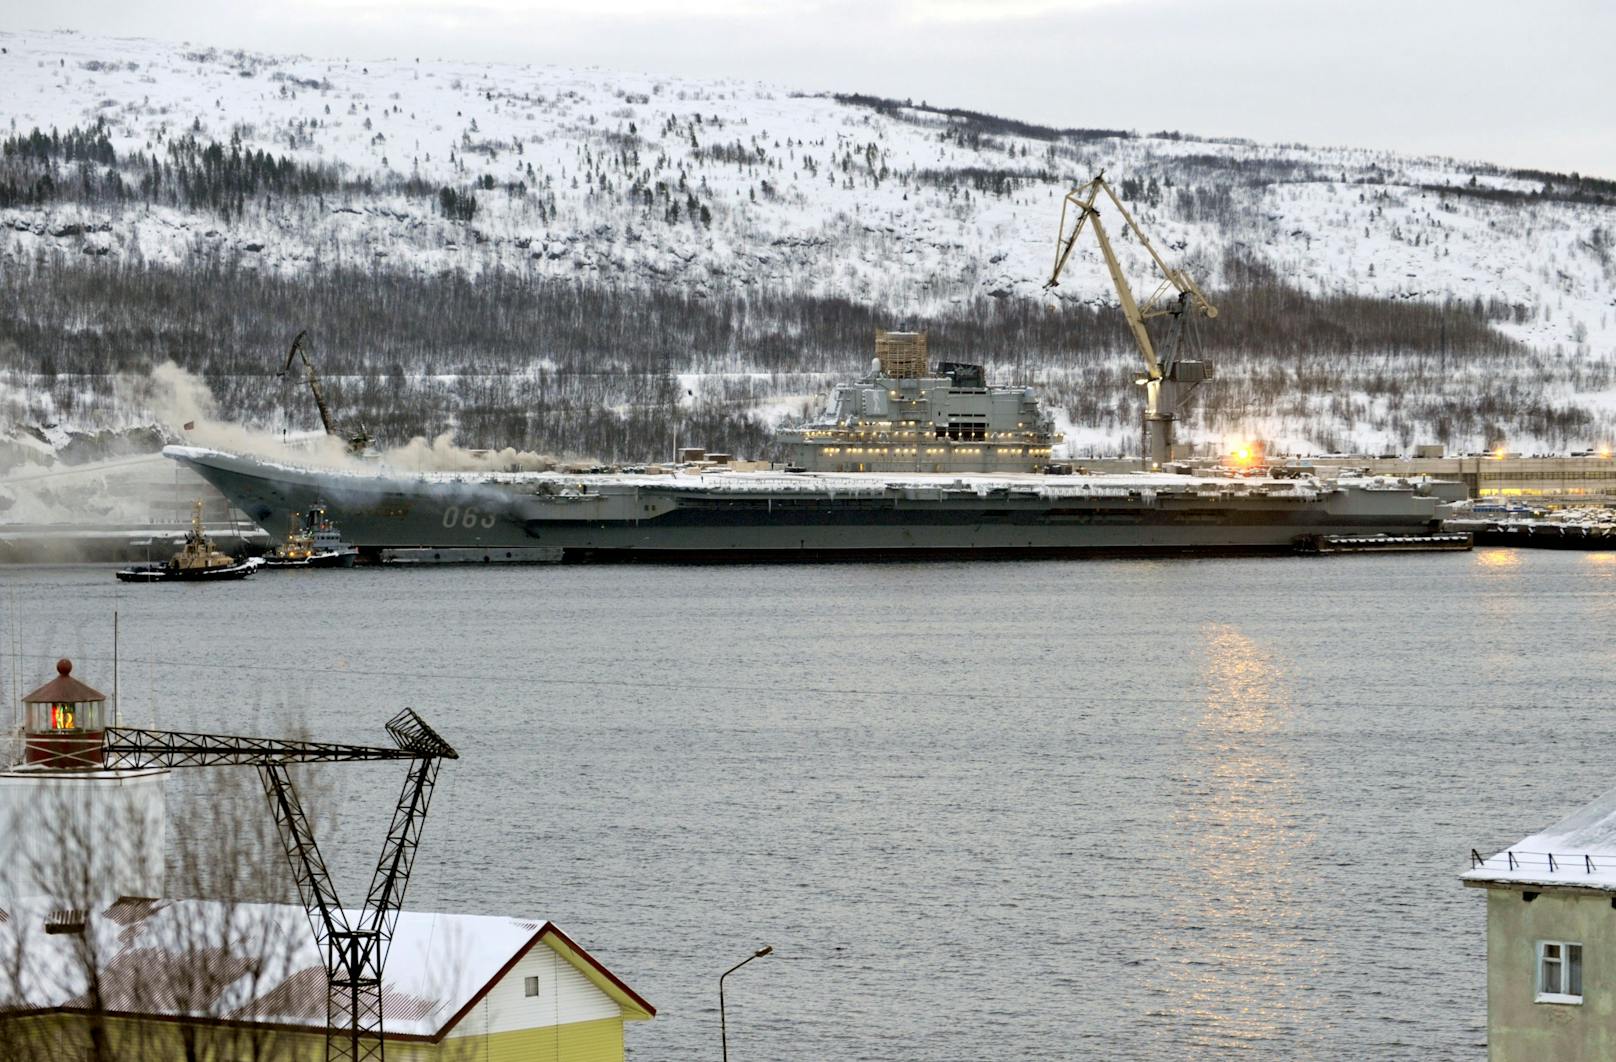 Das in der Werft liegende Kriegsschiff habe evakuiert werden müssen, meldete die staatliche russische Nachrichtenagentur Tass.